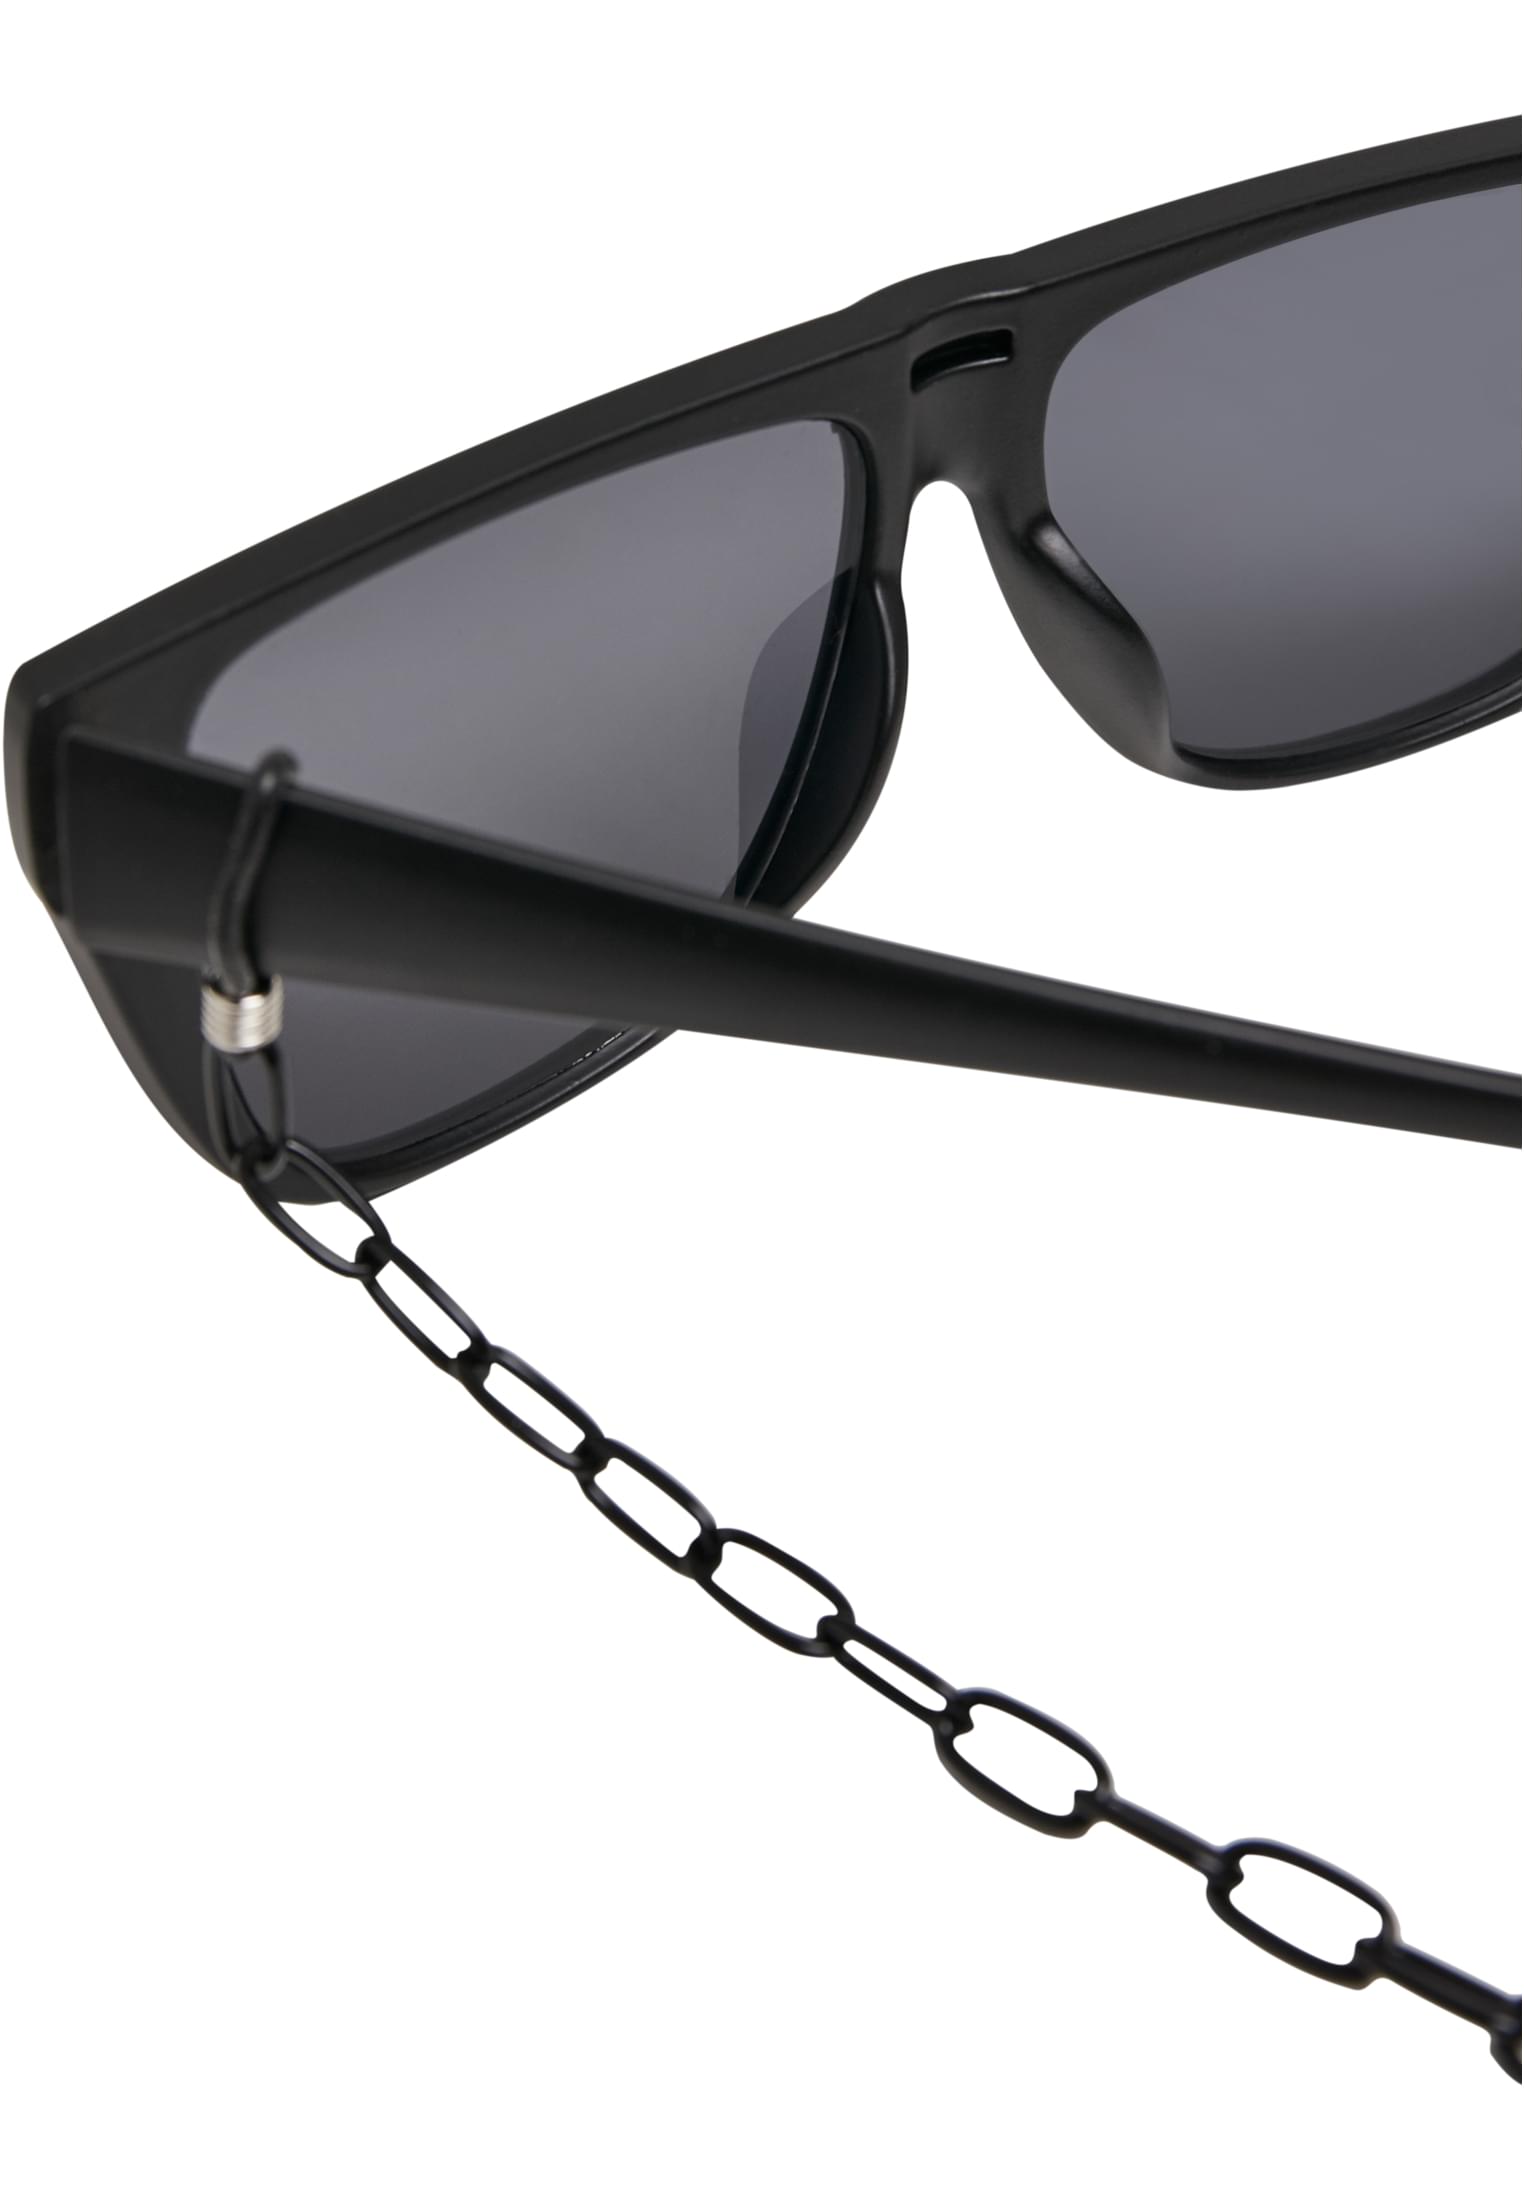 Visor-TB2780 Chain 108 Sunglasses